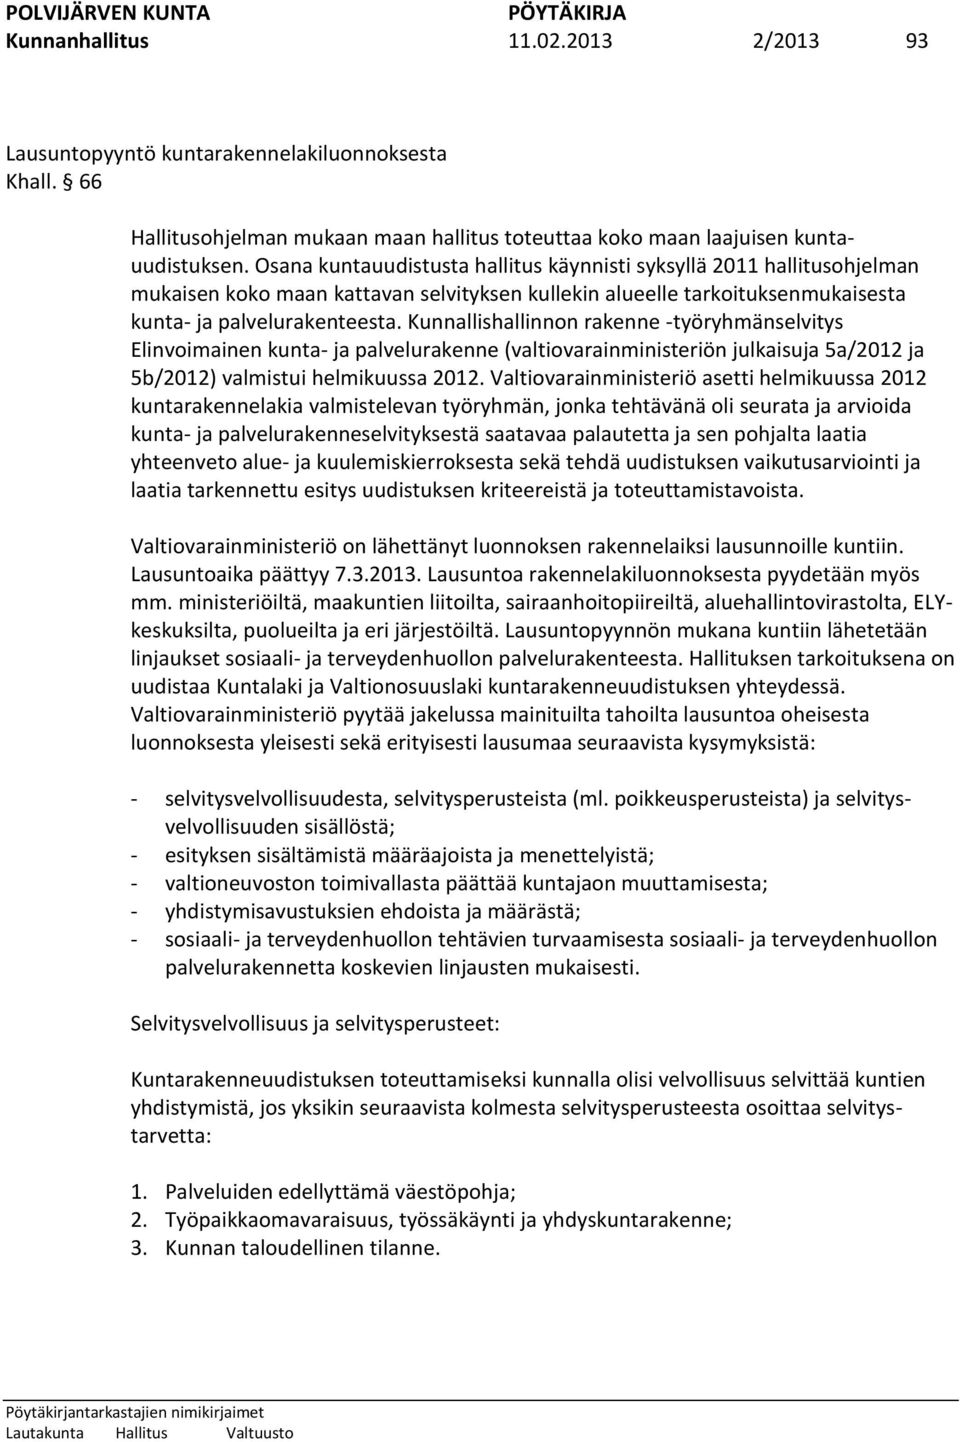 Kunnallishallinnon rakenne -työryhmänselvitys Elinvoimainen kunta- ja palvelurakenne (valtiovarainministeriön julkaisuja 5a/2012 ja 5b/2012) valmistui helmikuussa 2012.